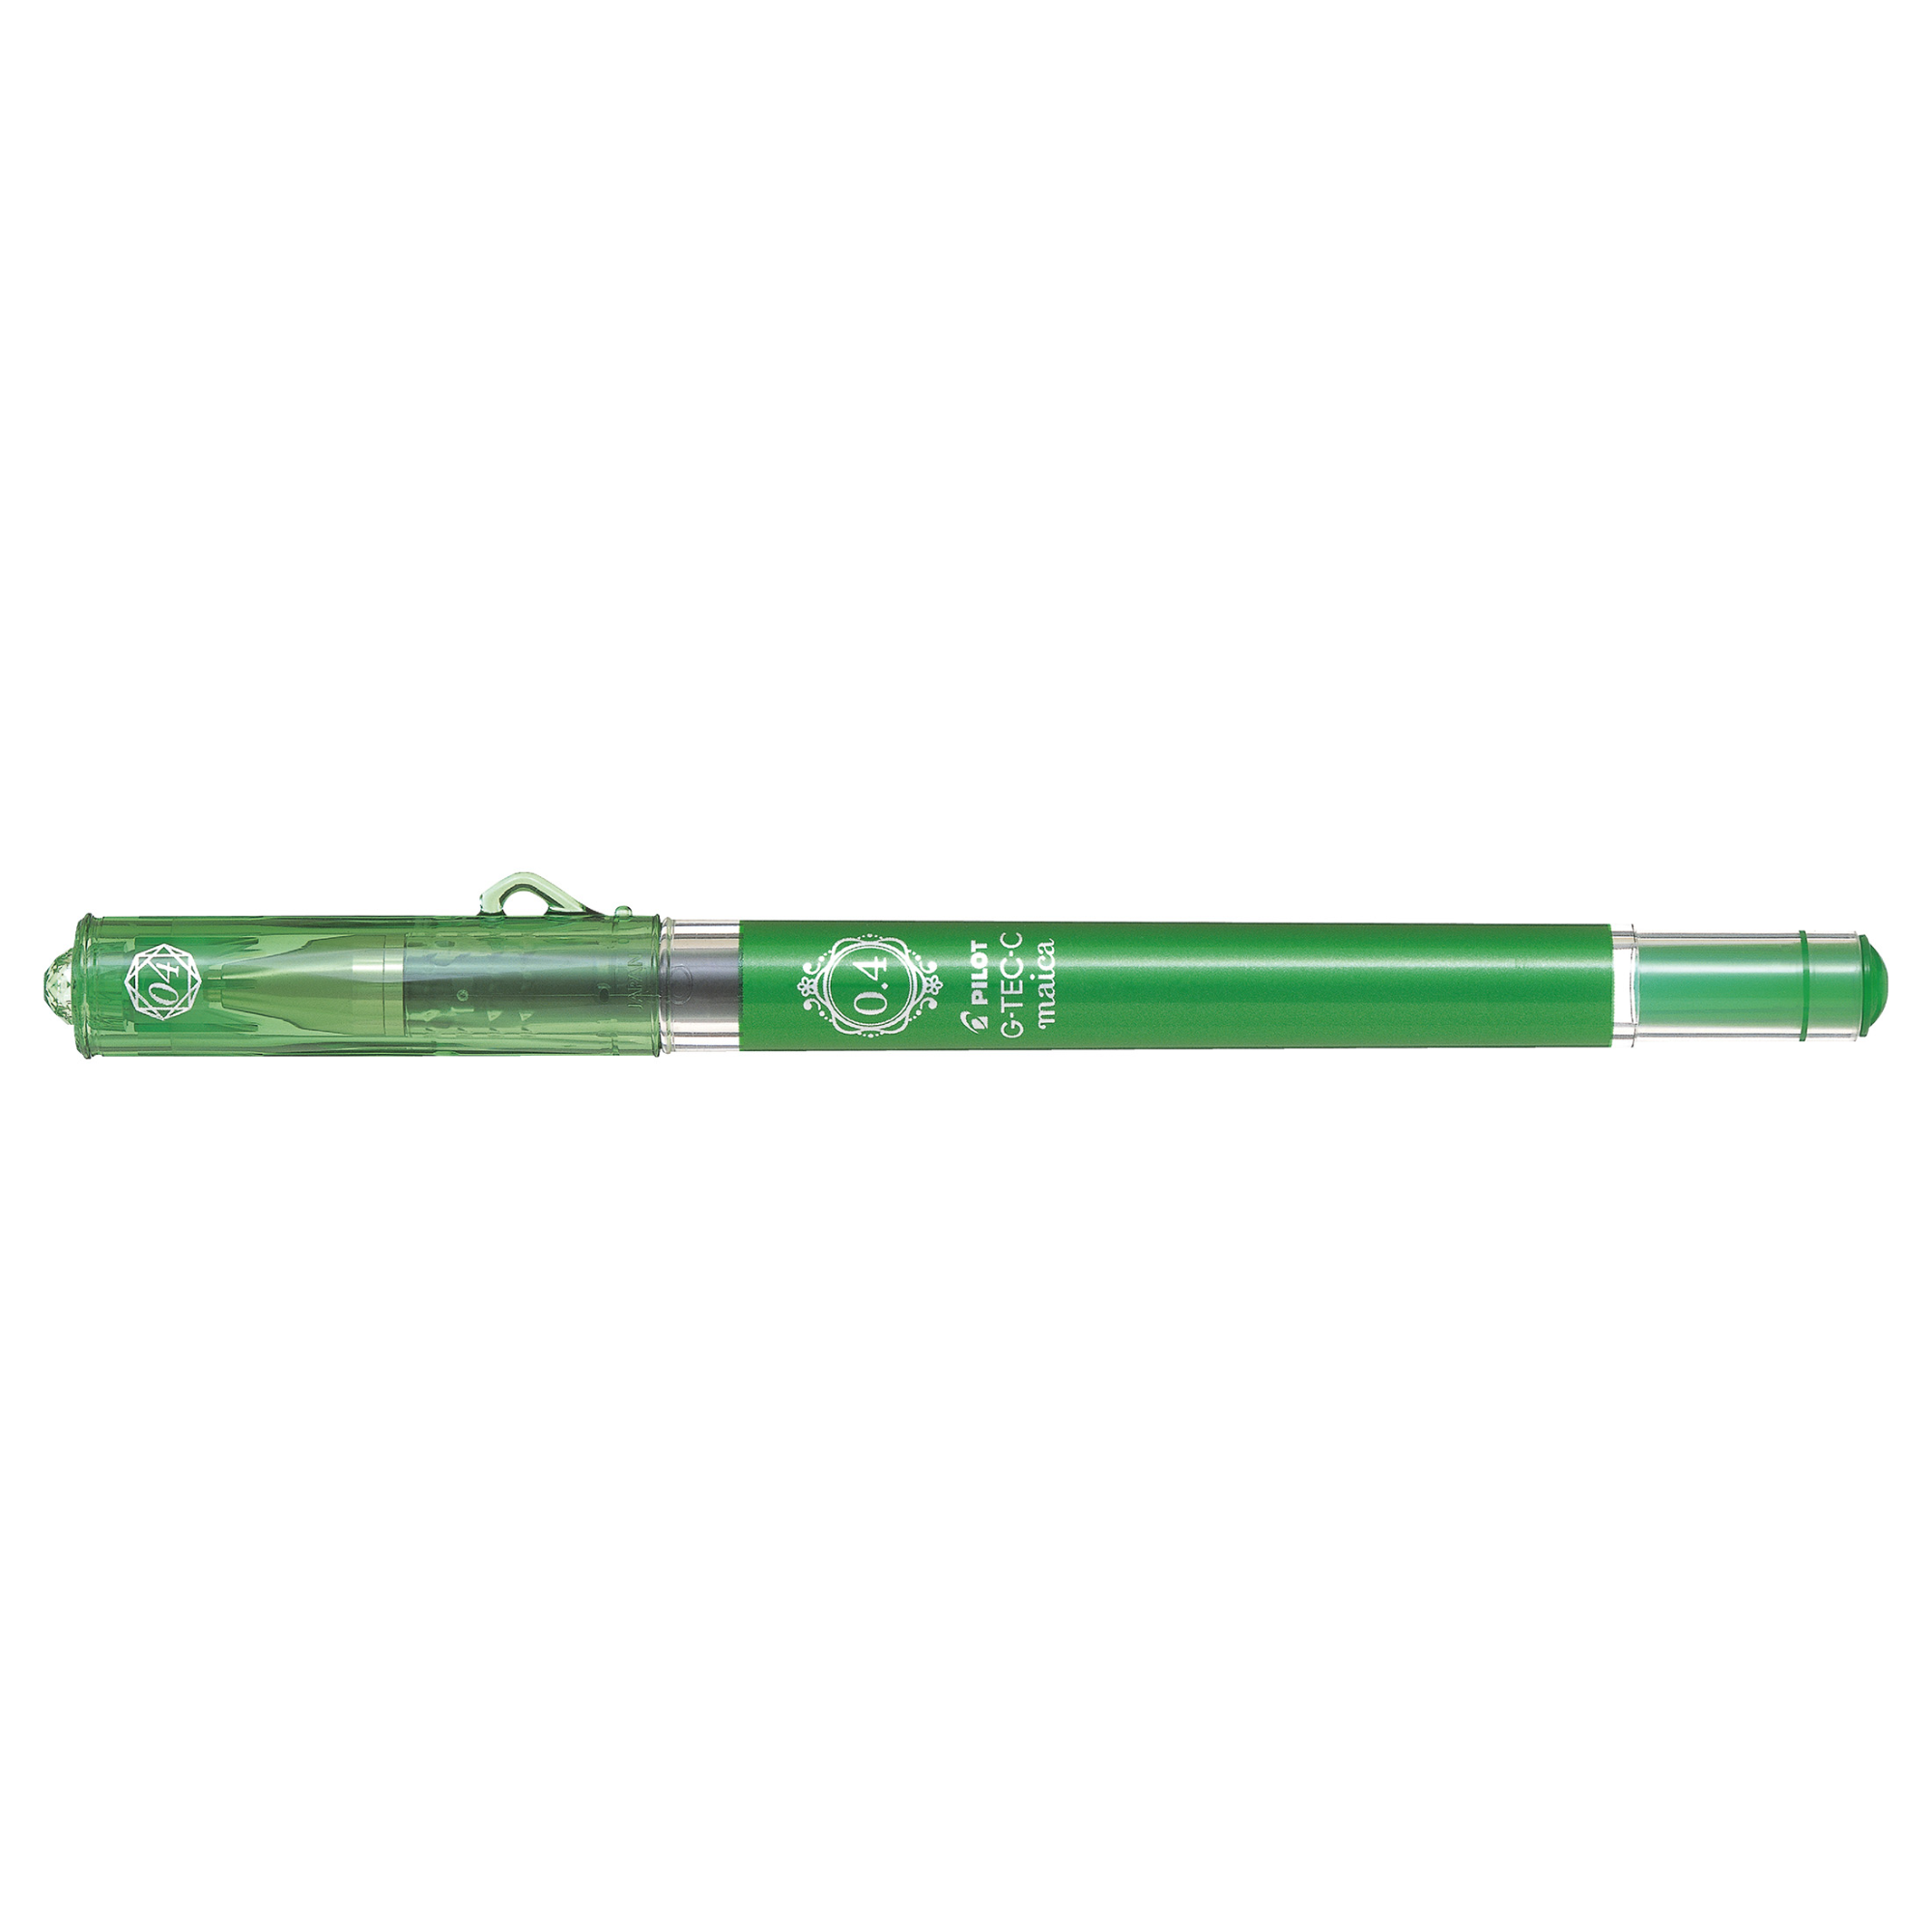 Maica G-TEC-C, Green, Ultra fine gel ink roller * Pilot